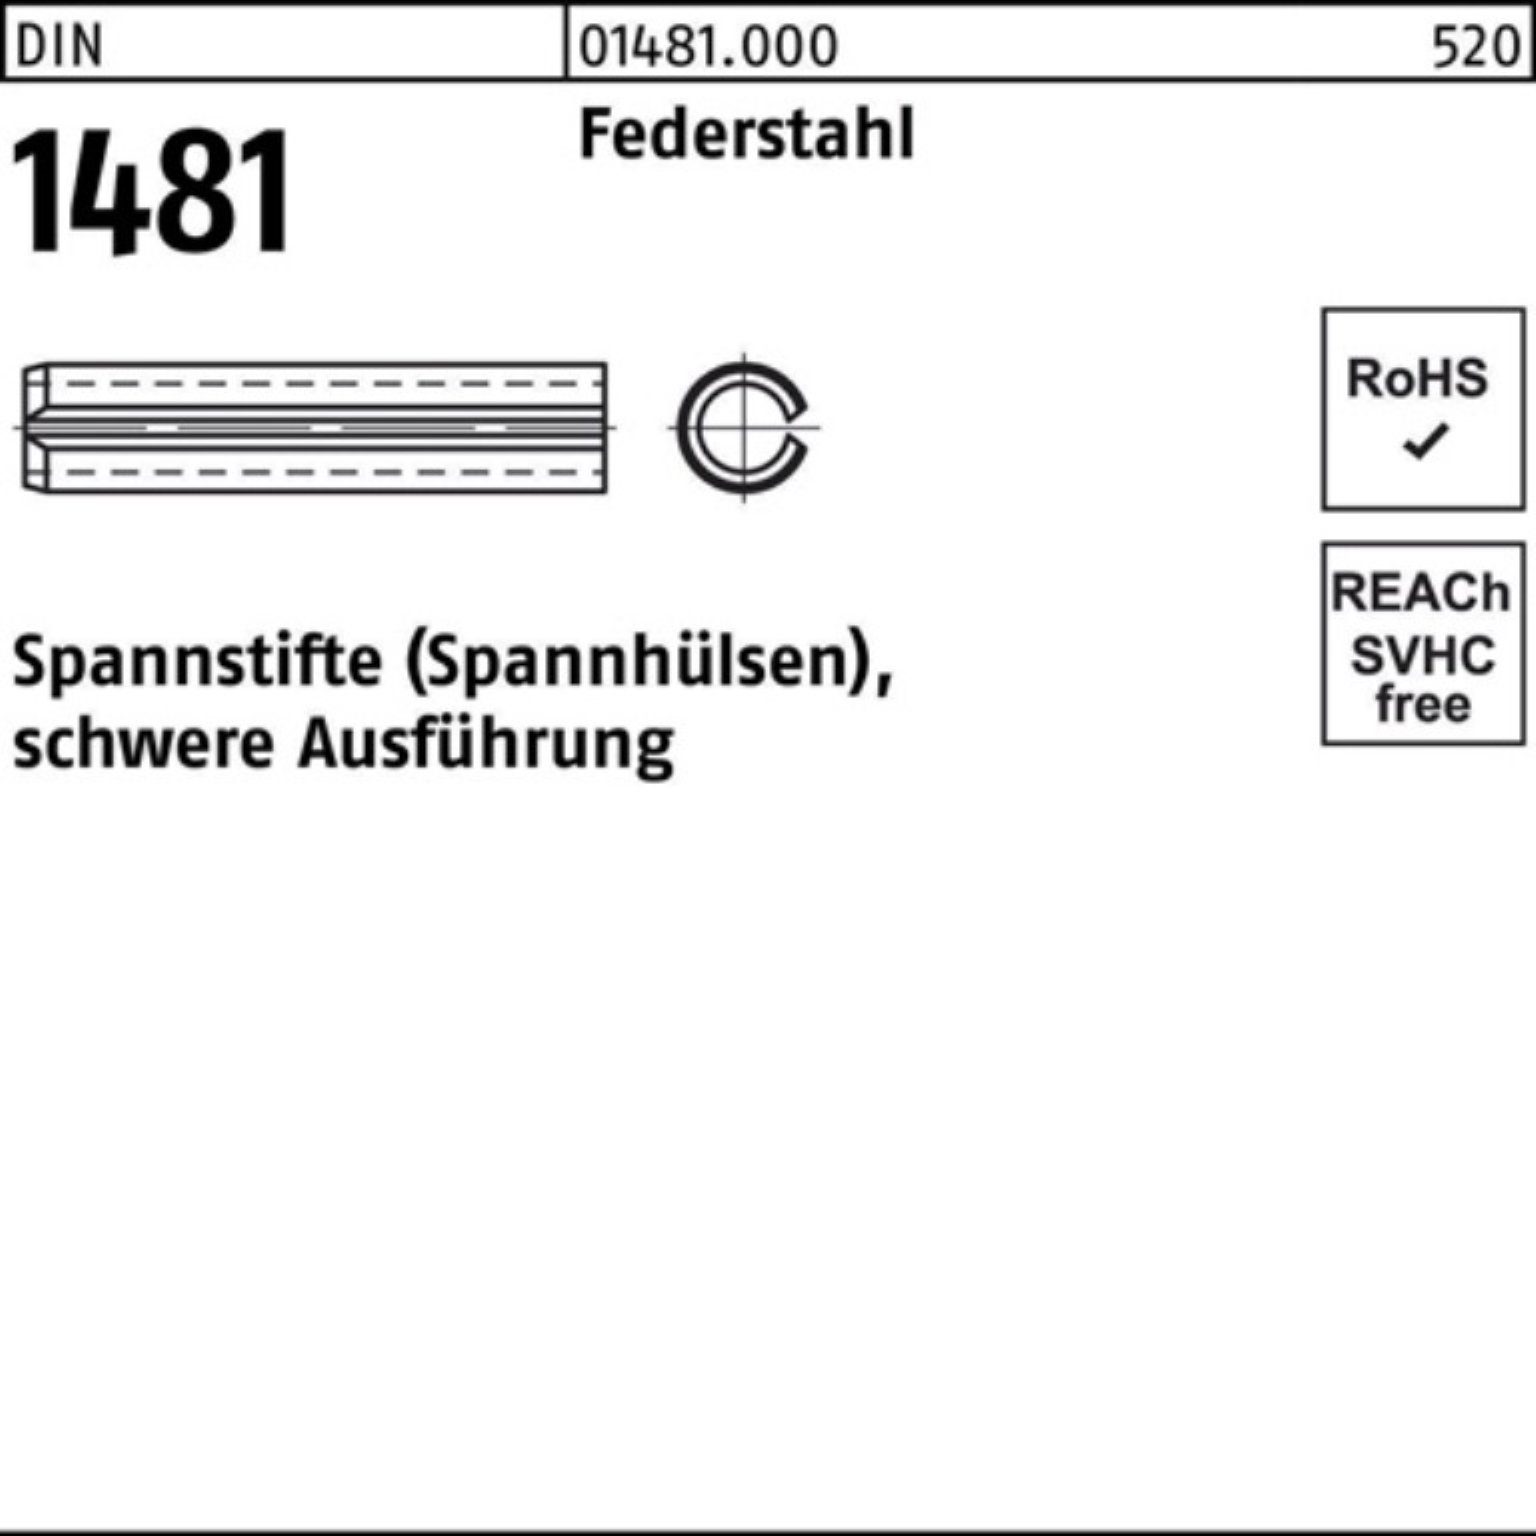 6x 18 Reyher Spannstift Federstahl Ausführung 10 100er 1481 schwere DIN Spannstift Pack